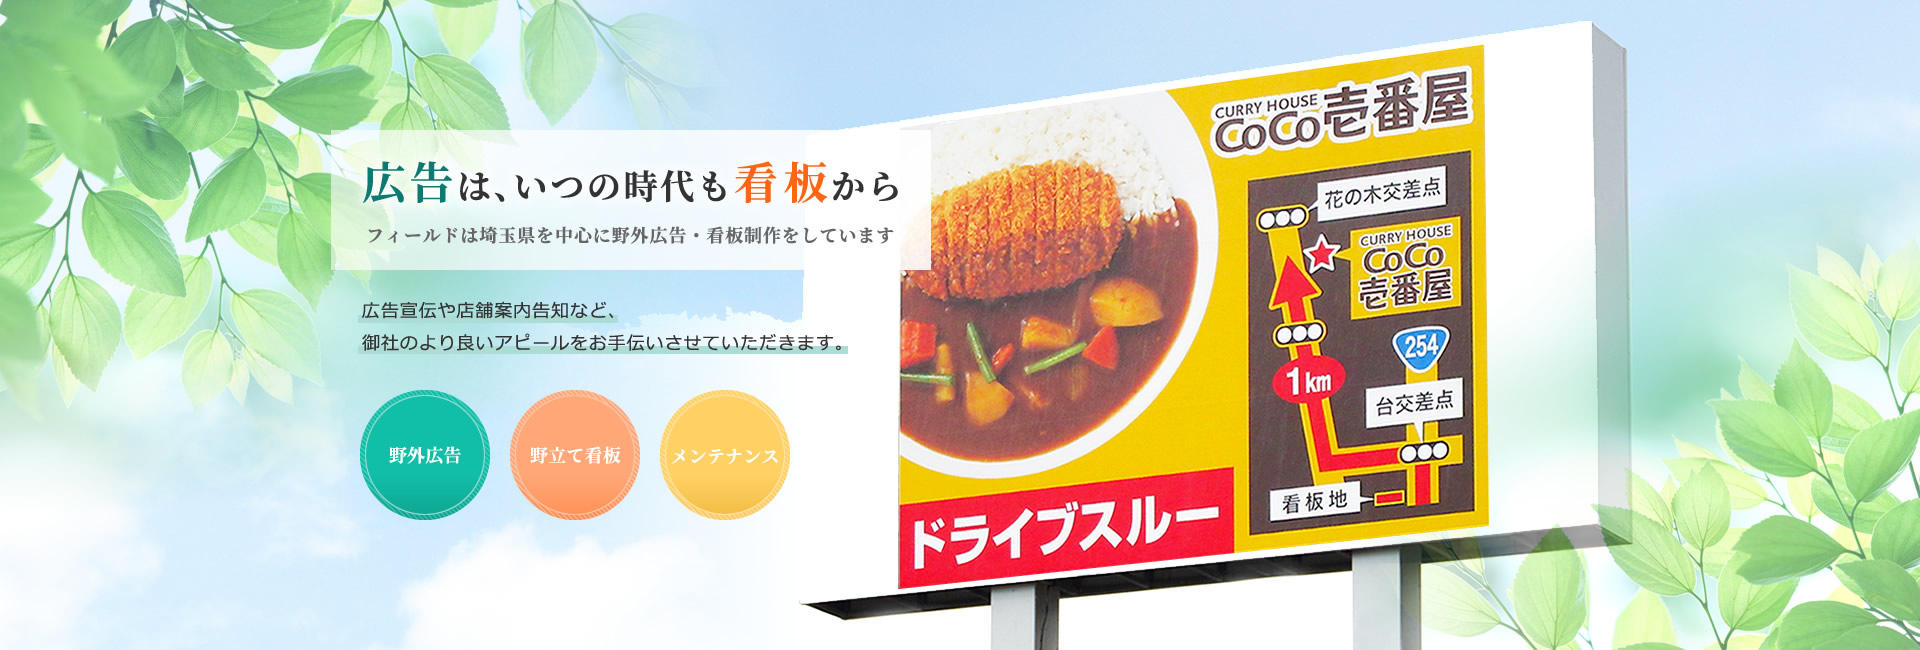 野立て看板・屋外広告は埼玉県の株式会社フィールド | さいたま市